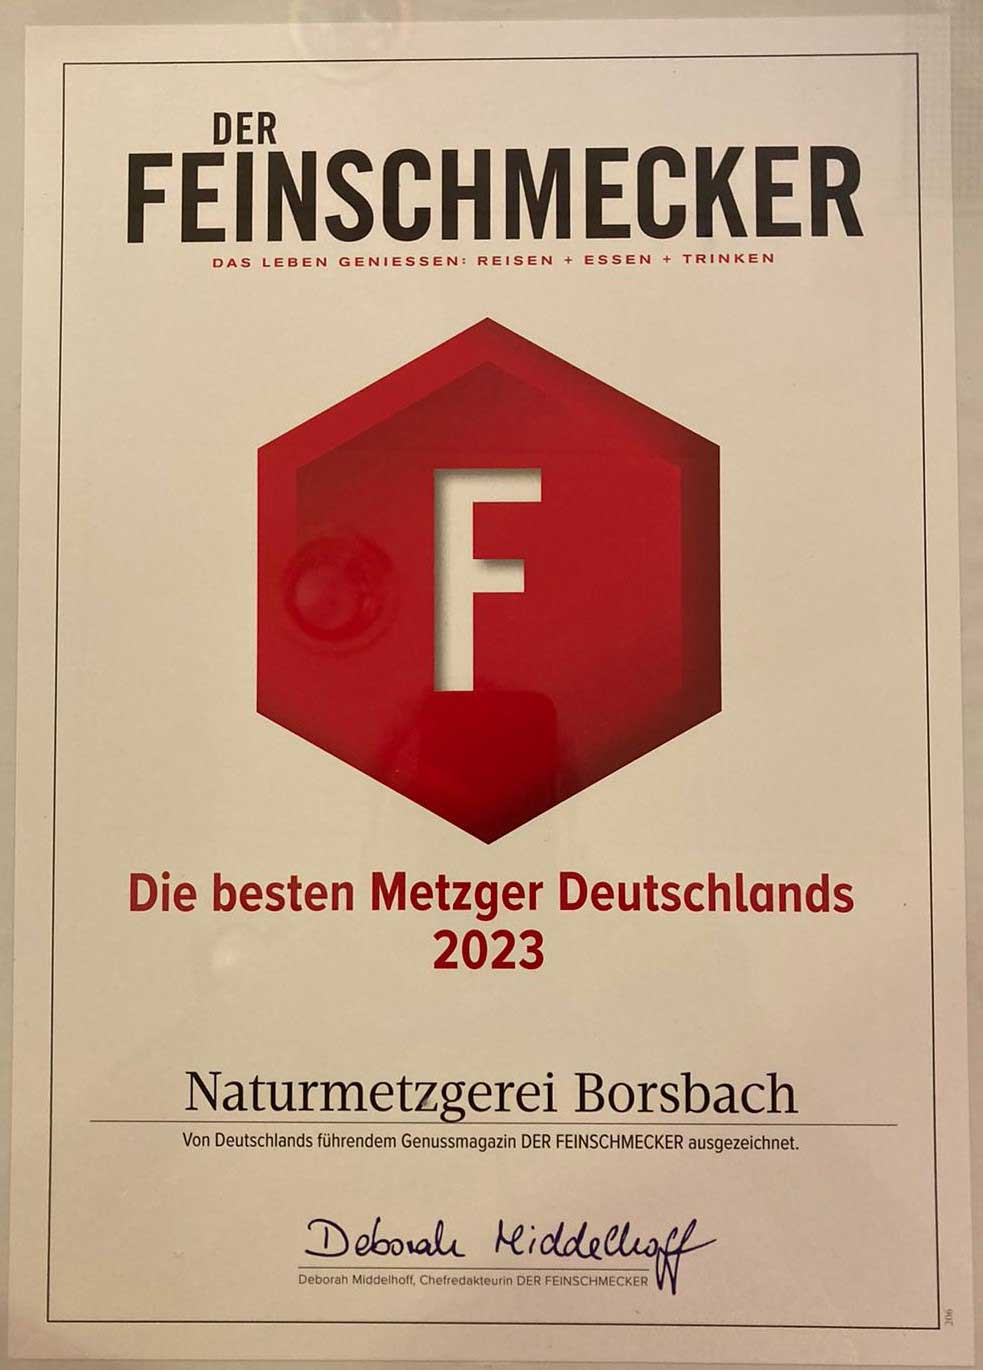 Das Feinschmecker-Zertifikat für die besten Metzger Deutschlands 2019/20